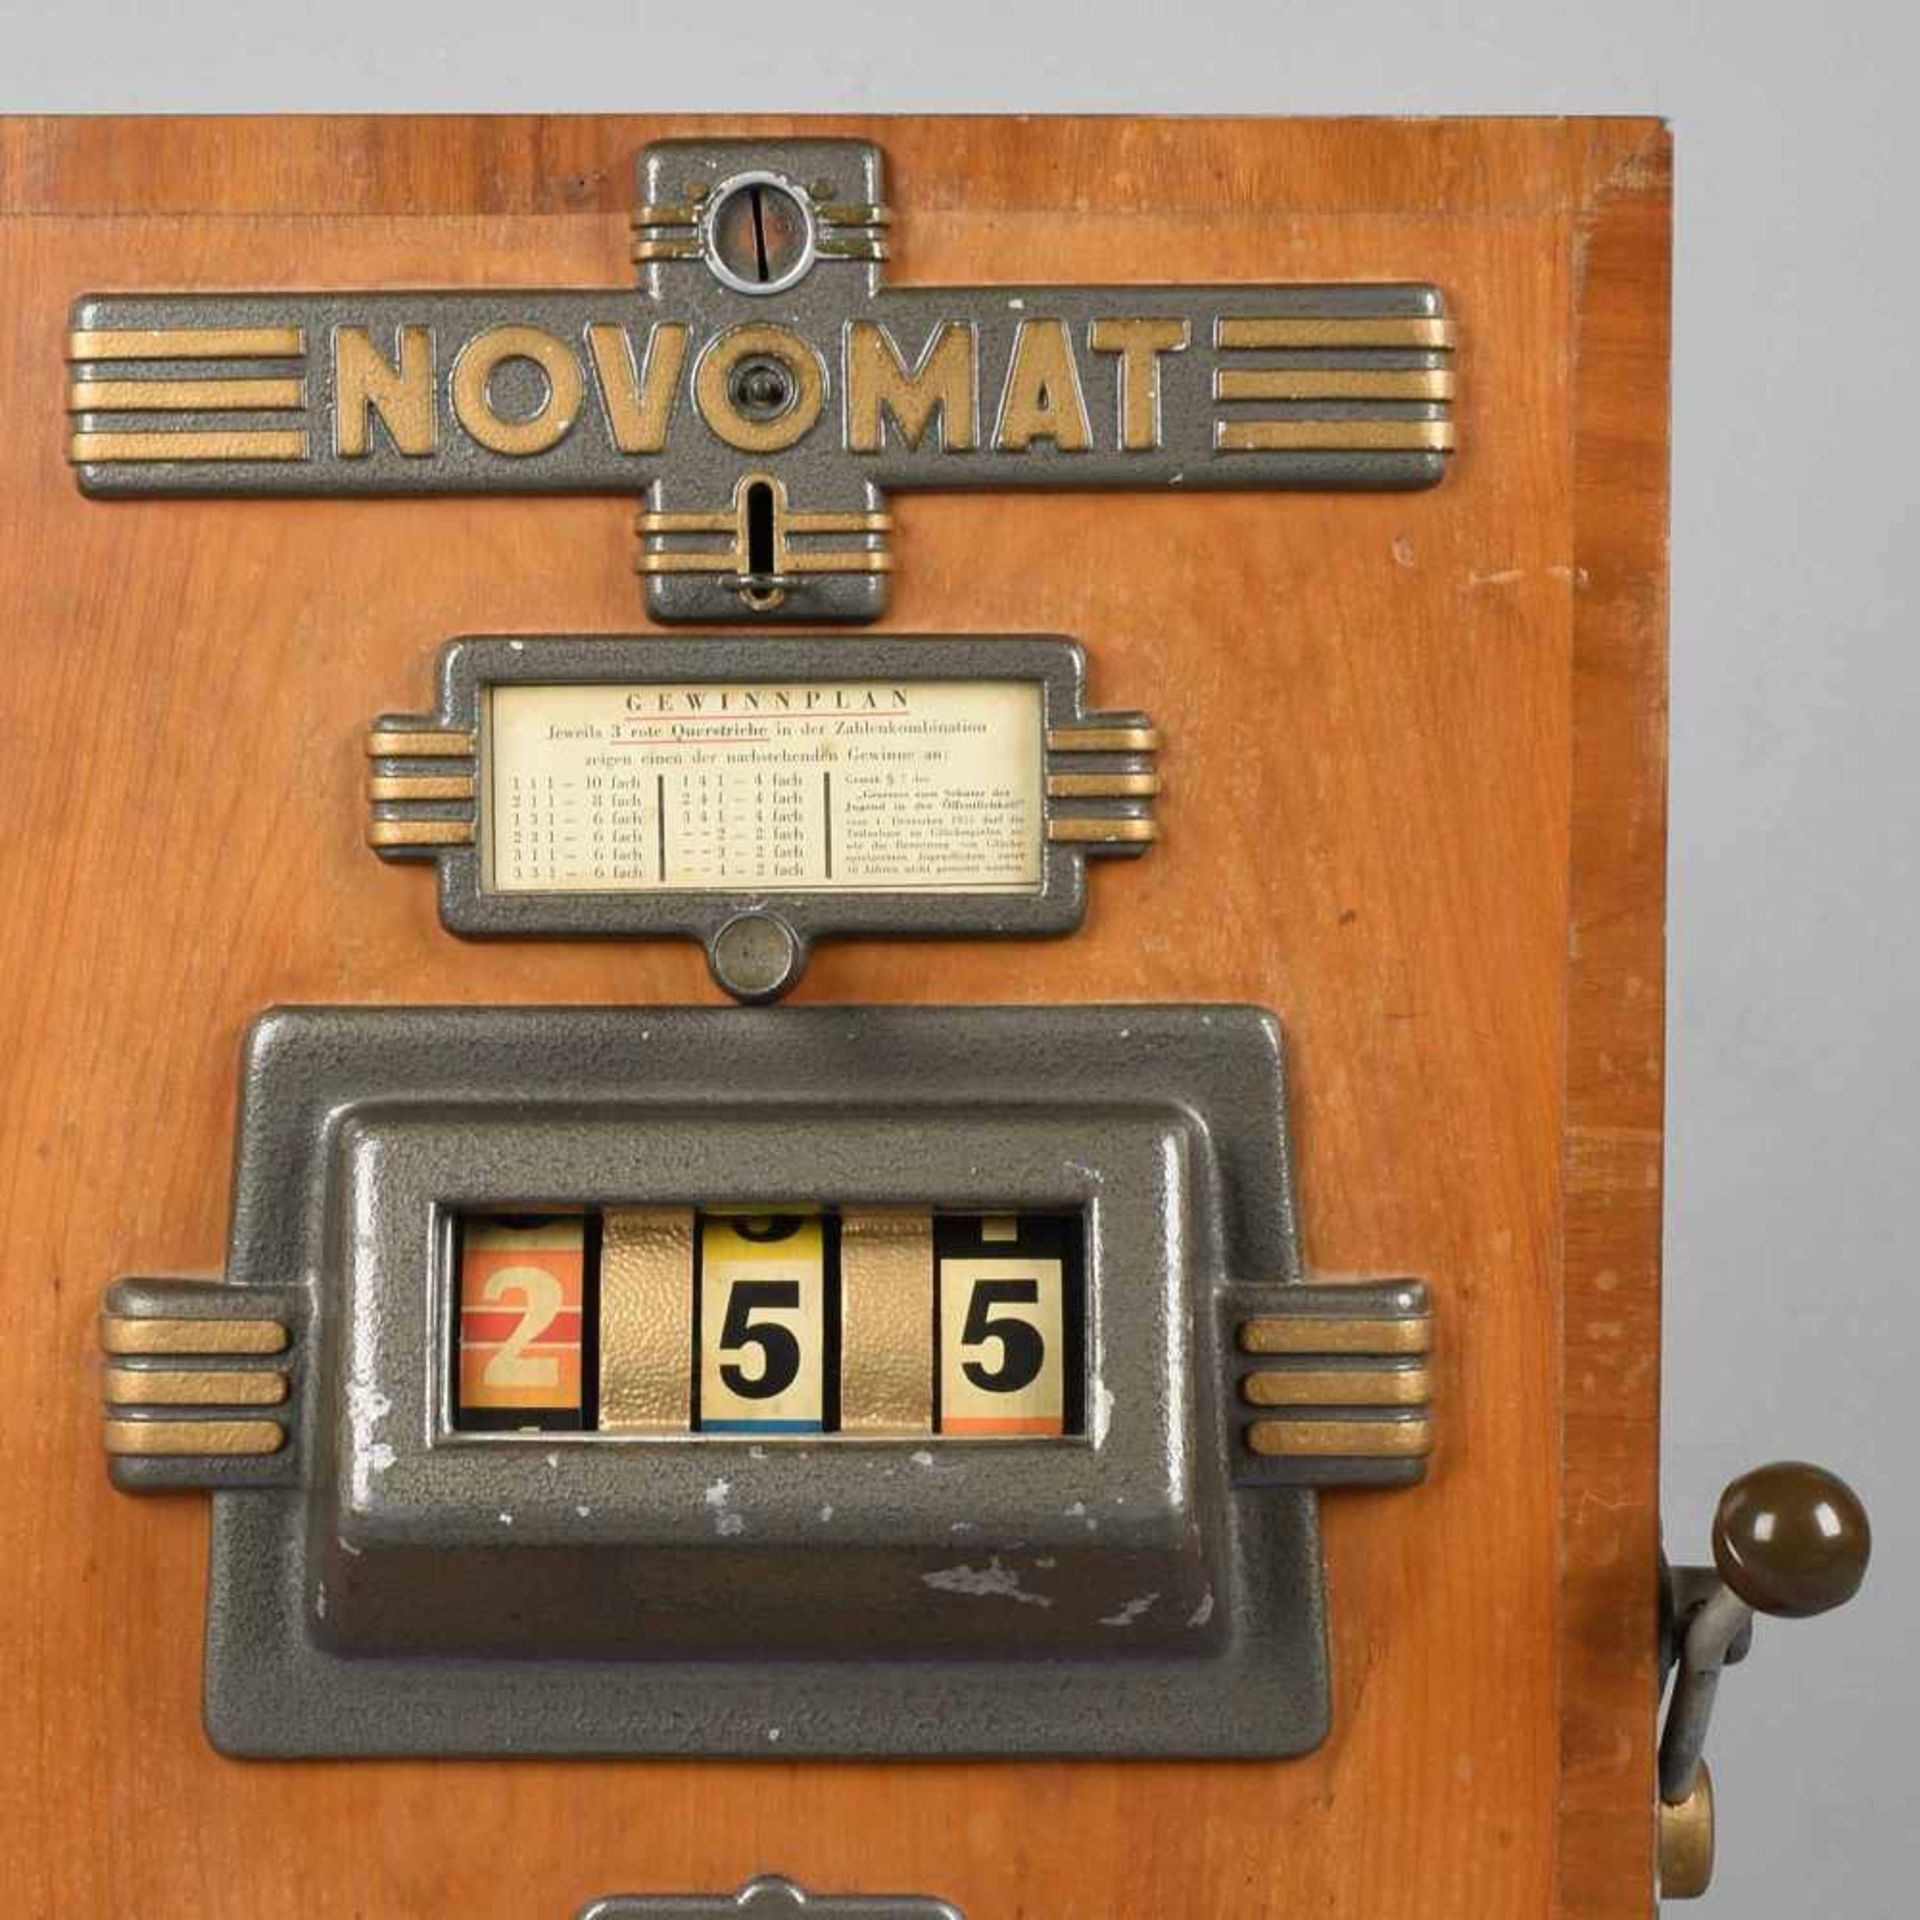 Wandspielautomat "Novomat", Holzgehäuse, mit gegossenen Metallbeschlägen, seitlich Hebel zum